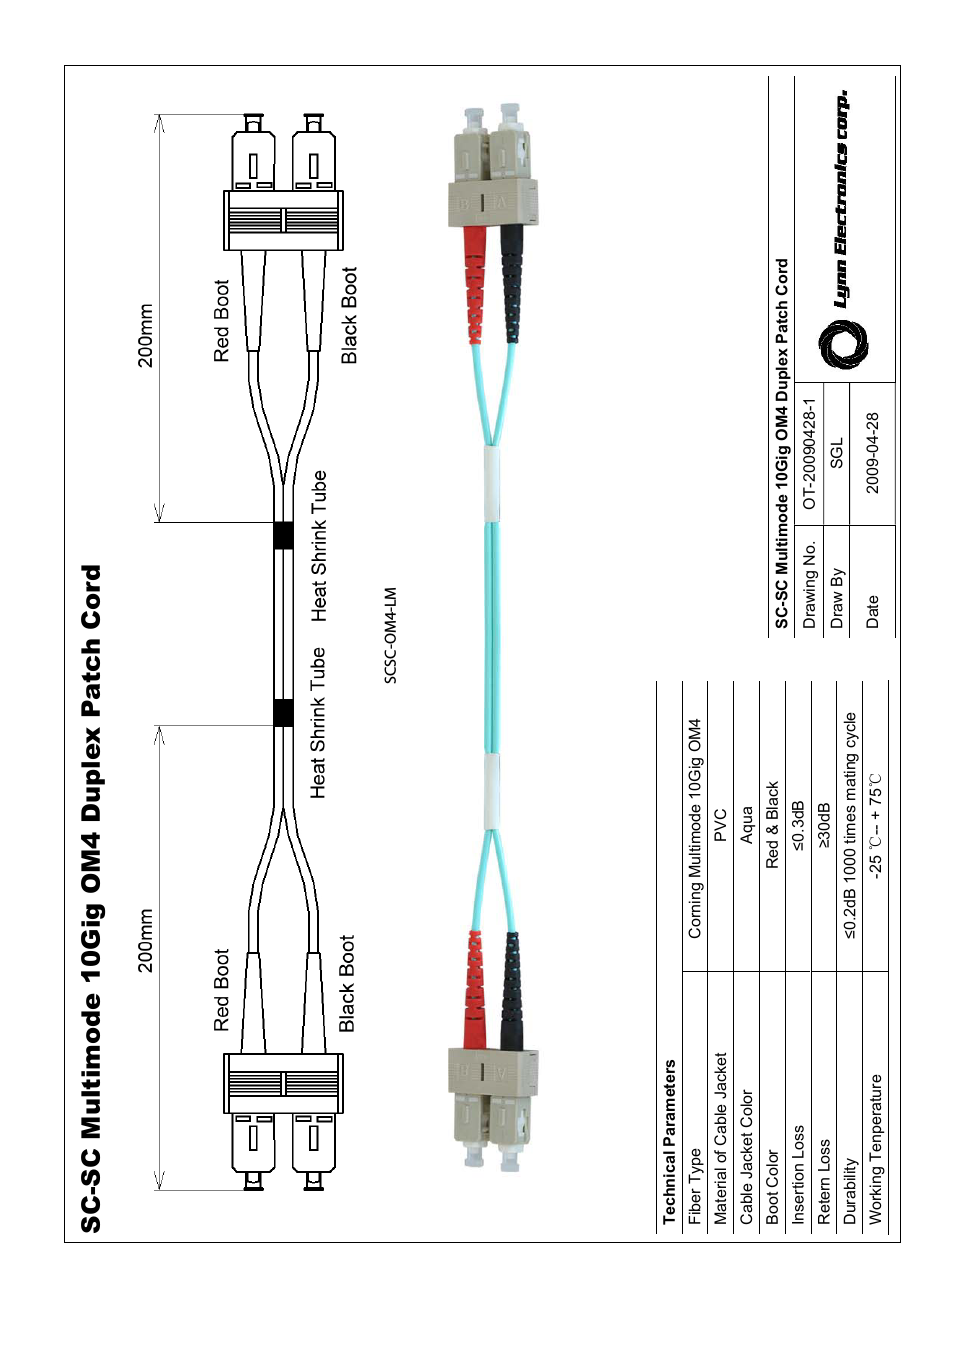 SC-SC 50-125 10GIG OM4 Multimode Fiber Patch Cables